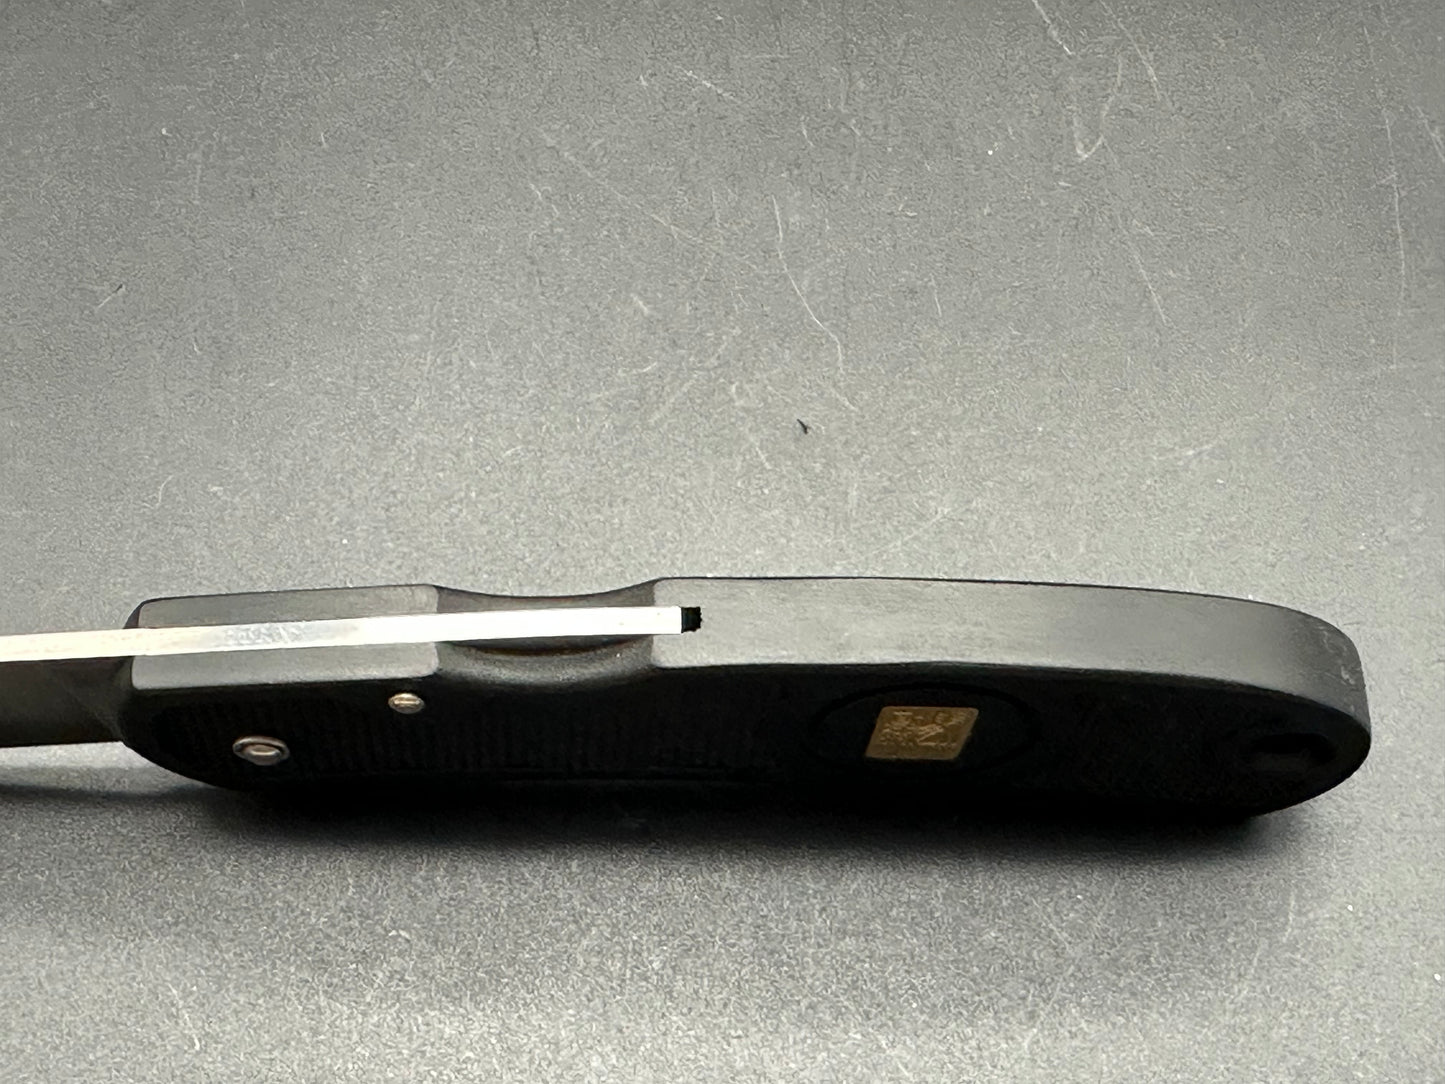 Al Mar ATS-34 knife